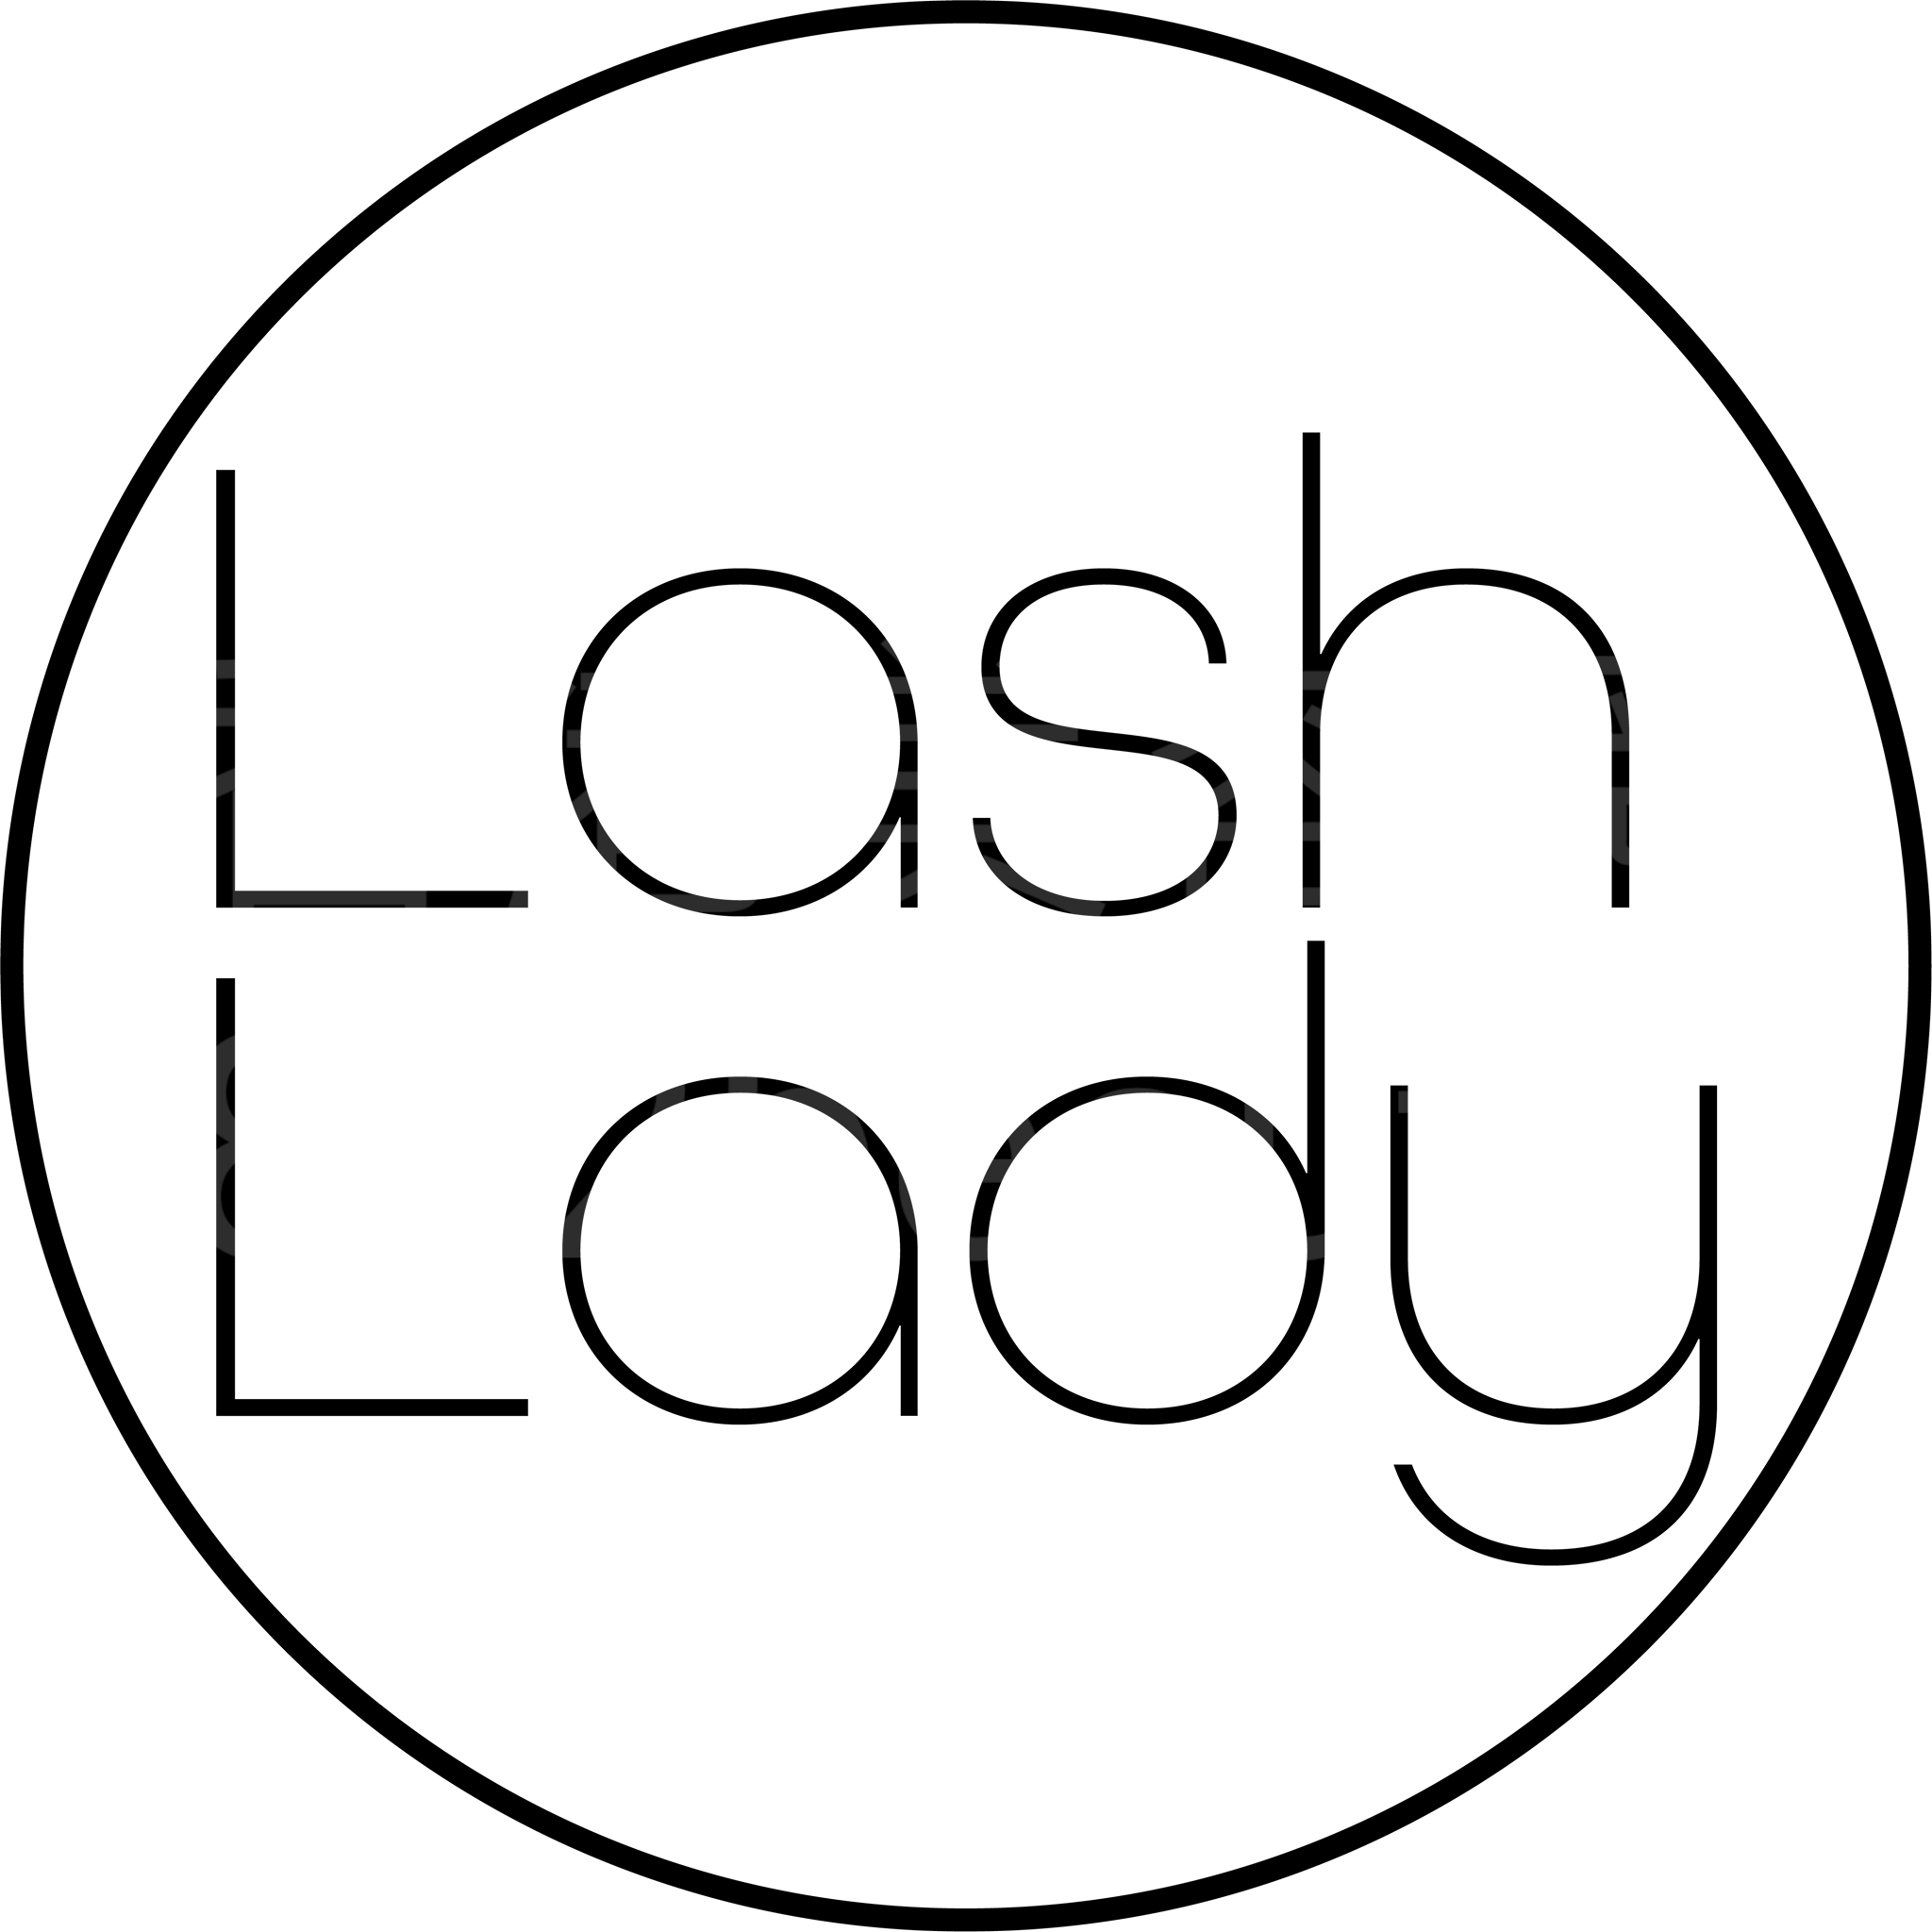 : Lash Lady